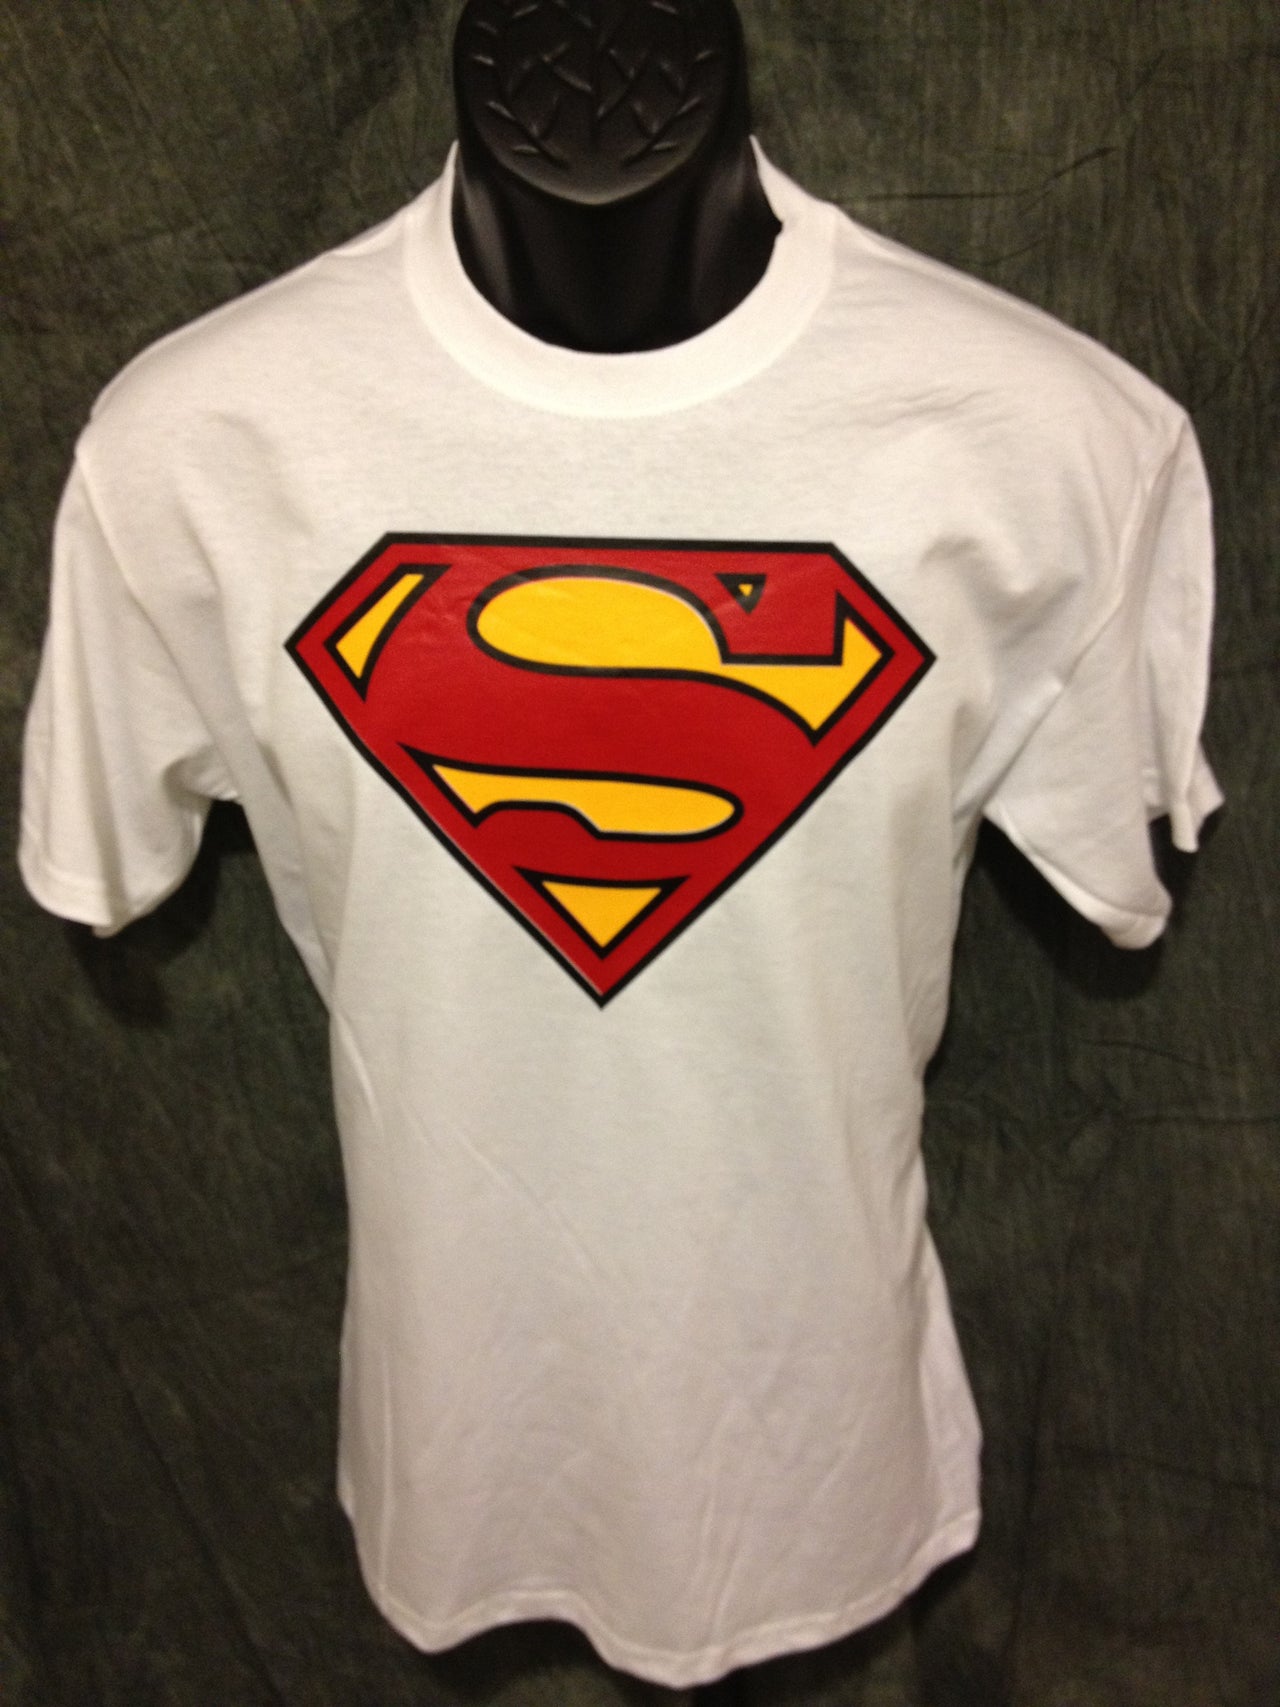 Superman Classic Logo on White Tshirt - TshirtNow.net - 3